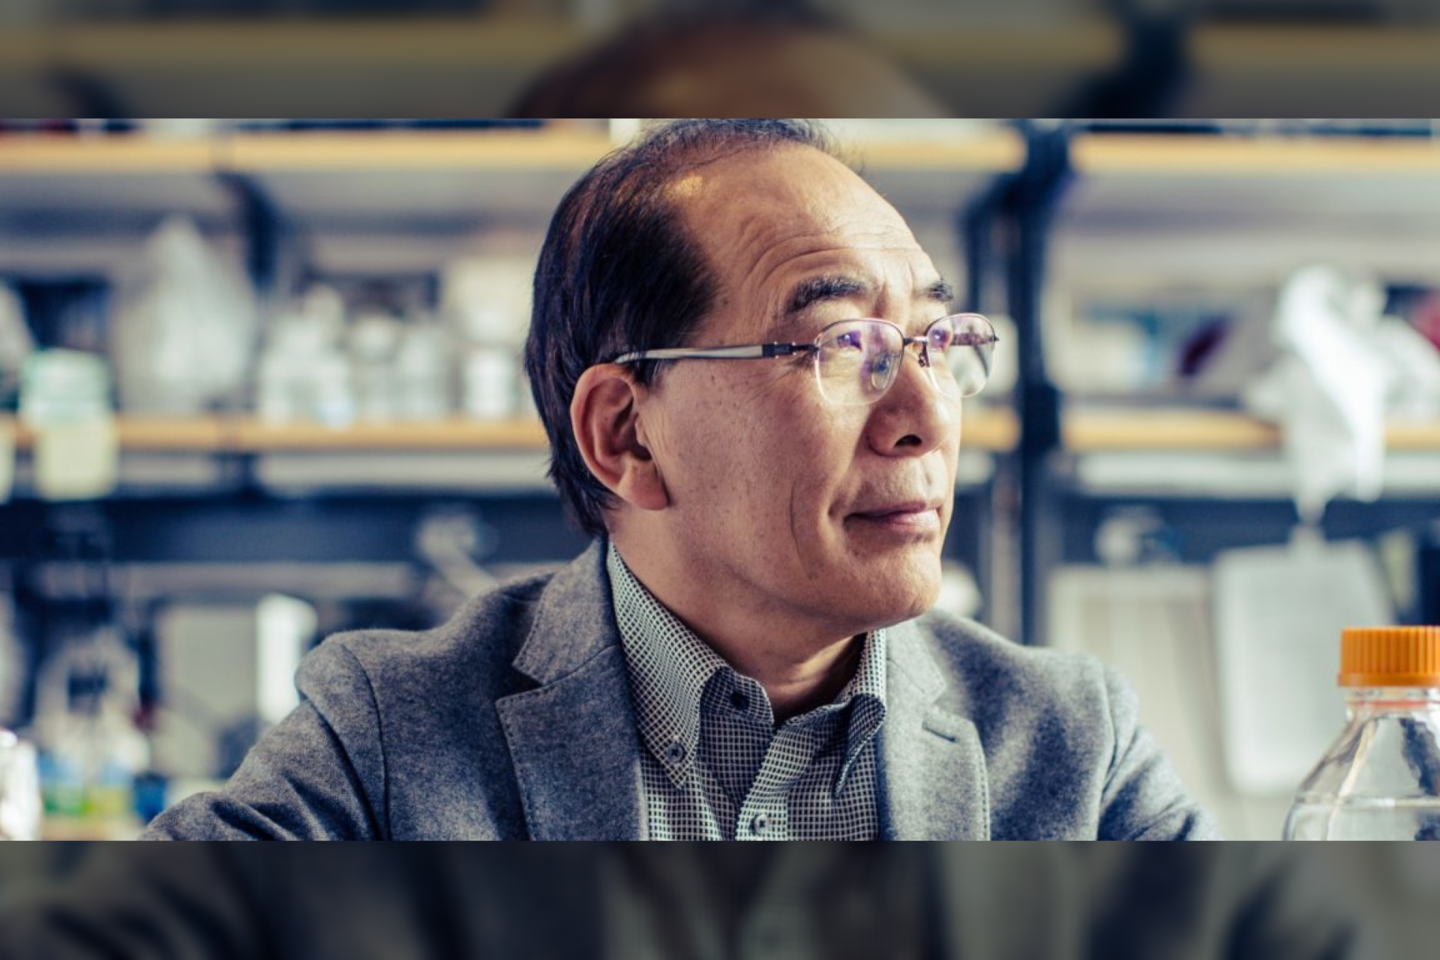  Kamieninių ląstelių biologas Hiromitsu Nakauchi šios akimirkos laukė daugiau nei dešimtmetį.<br> Stenfordo universiteto nuotr.